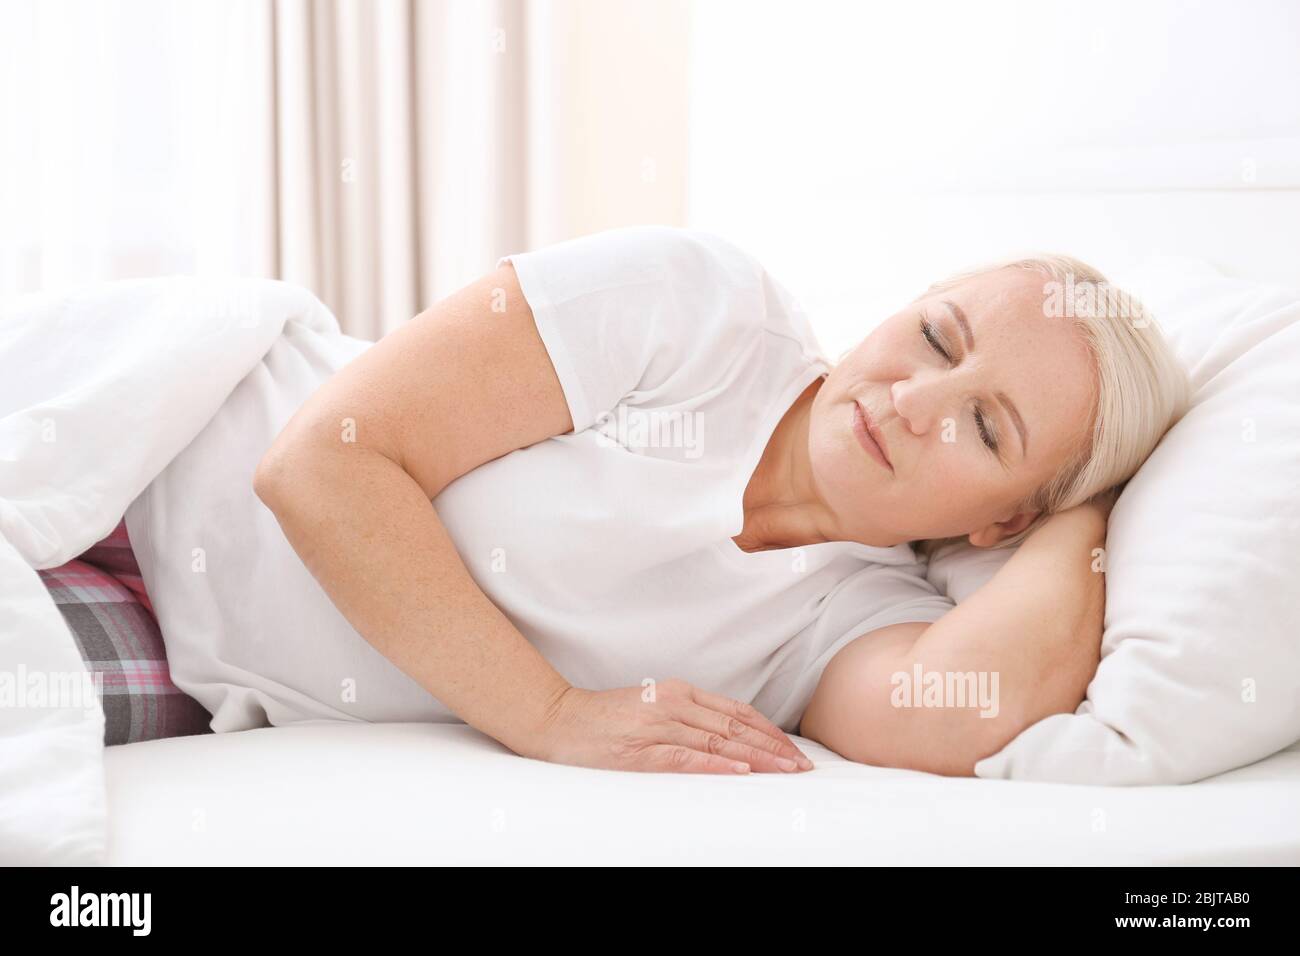 Senior woman sleeping on white pillow at home Stock Photo